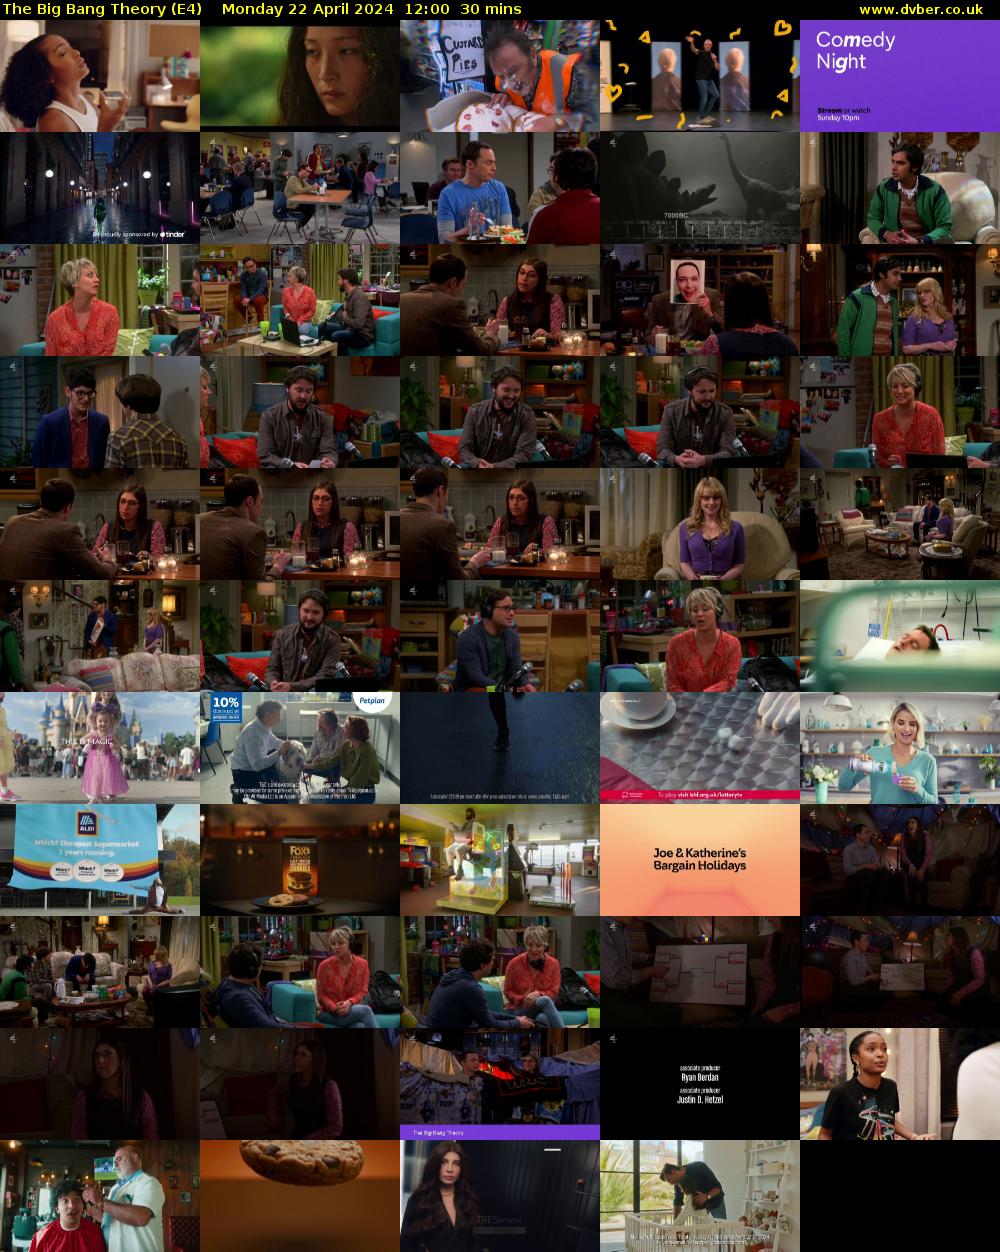 The Big Bang Theory (E4) Monday 22 April 2024 12:00 - 12:30